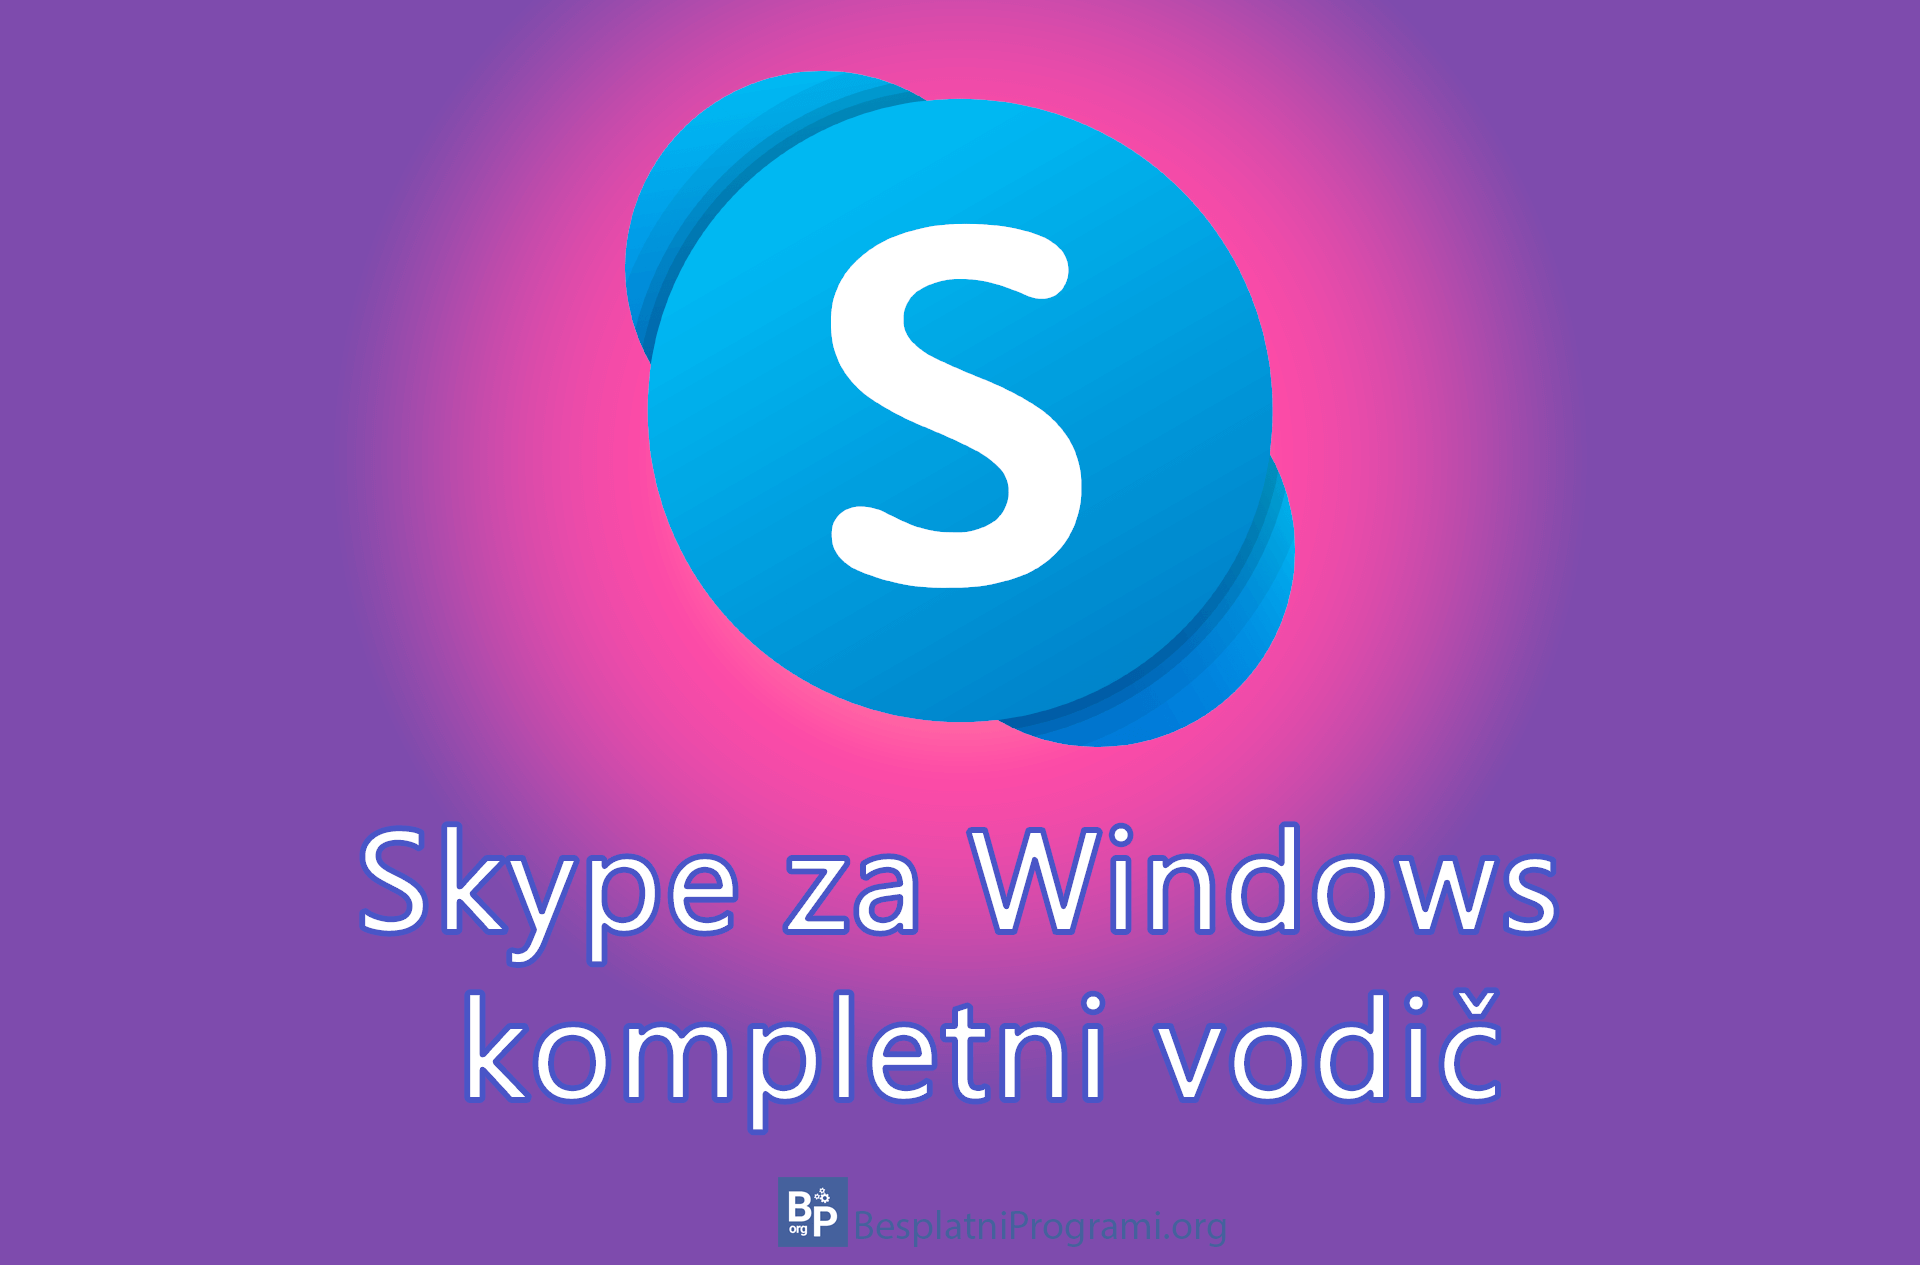 Skype za Windows – kompletni vodič